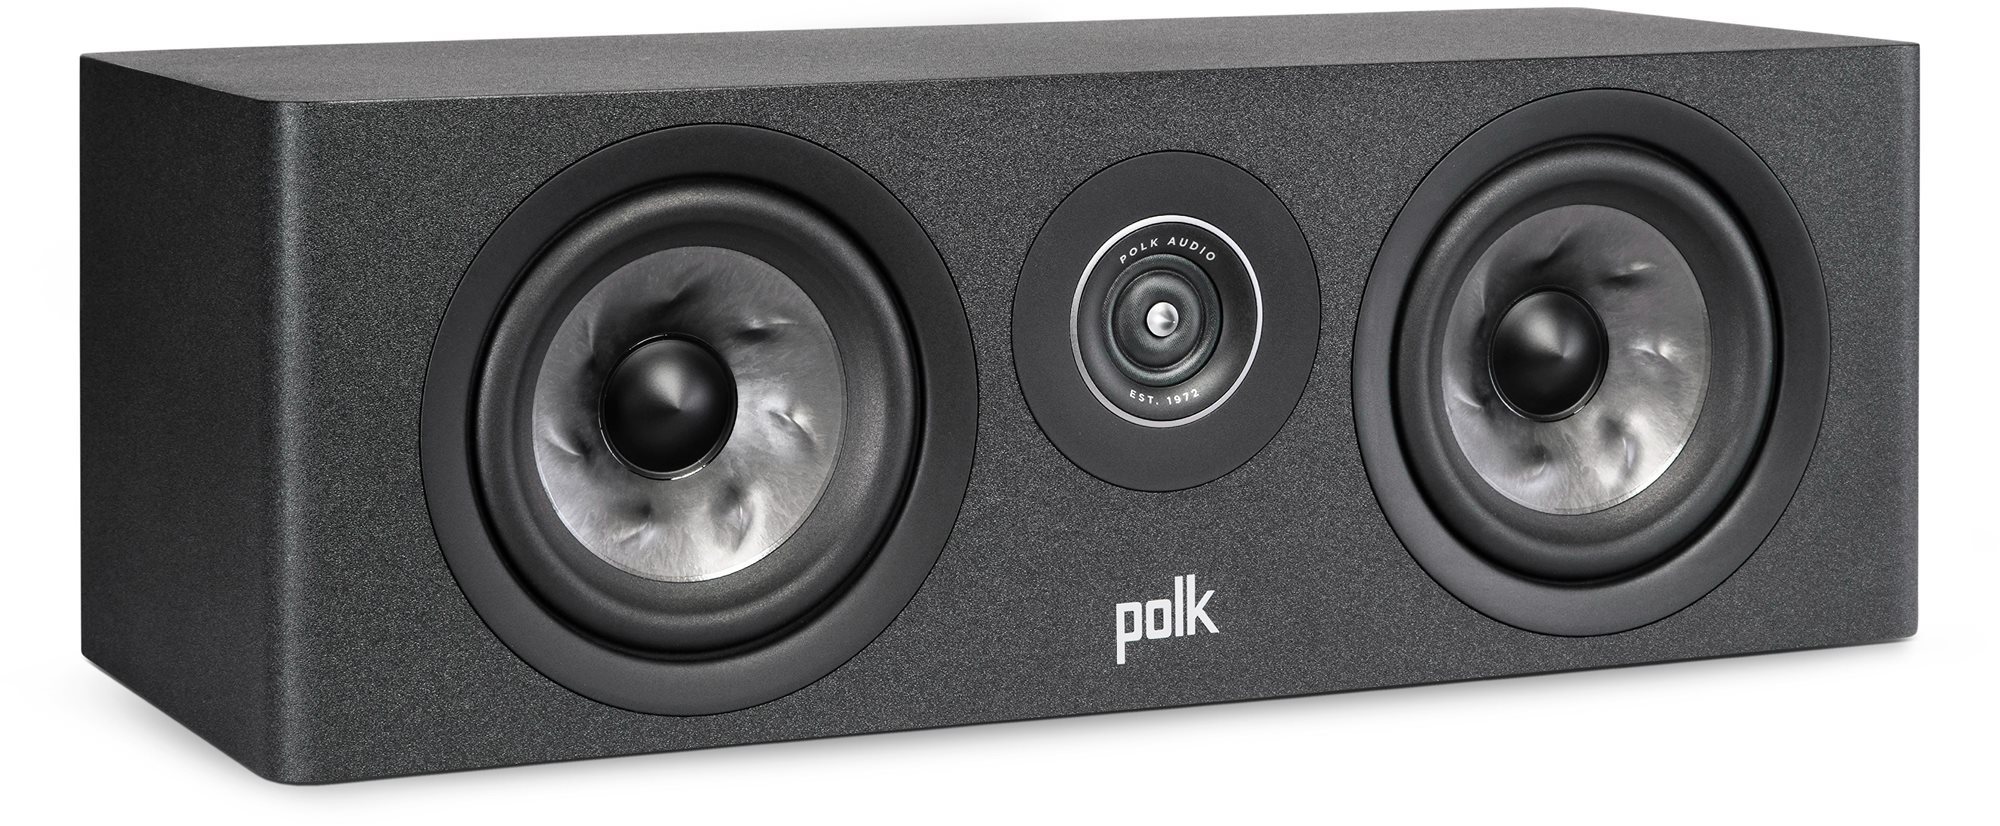 Polk audio polk reserve r300c fekete (darab)